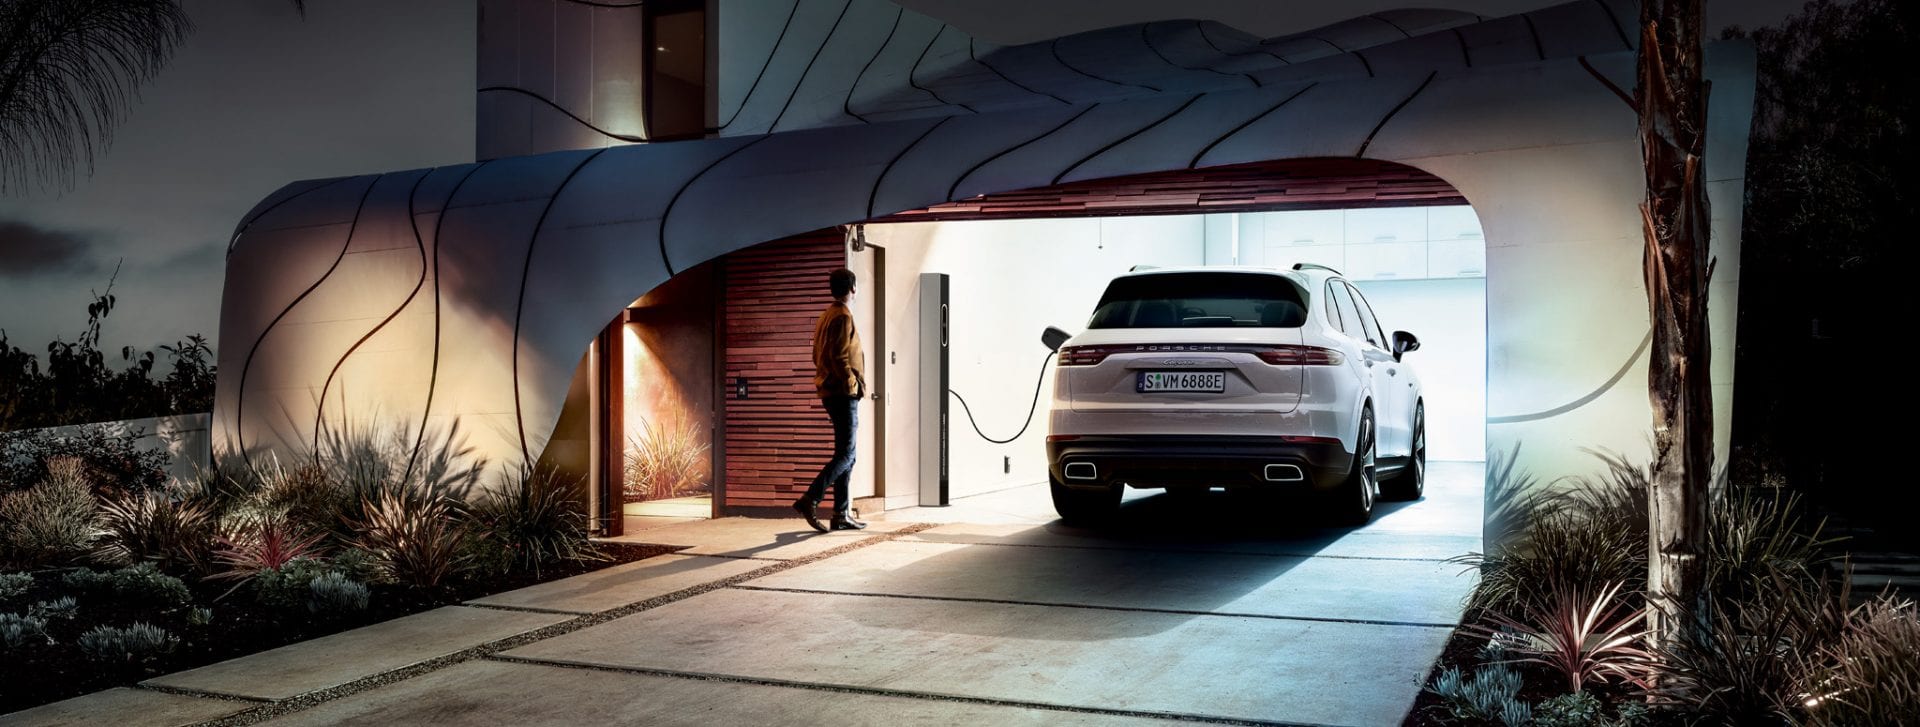 Porsche Cayenne sähköauton latauspisteessä modernin talon autotallissa.